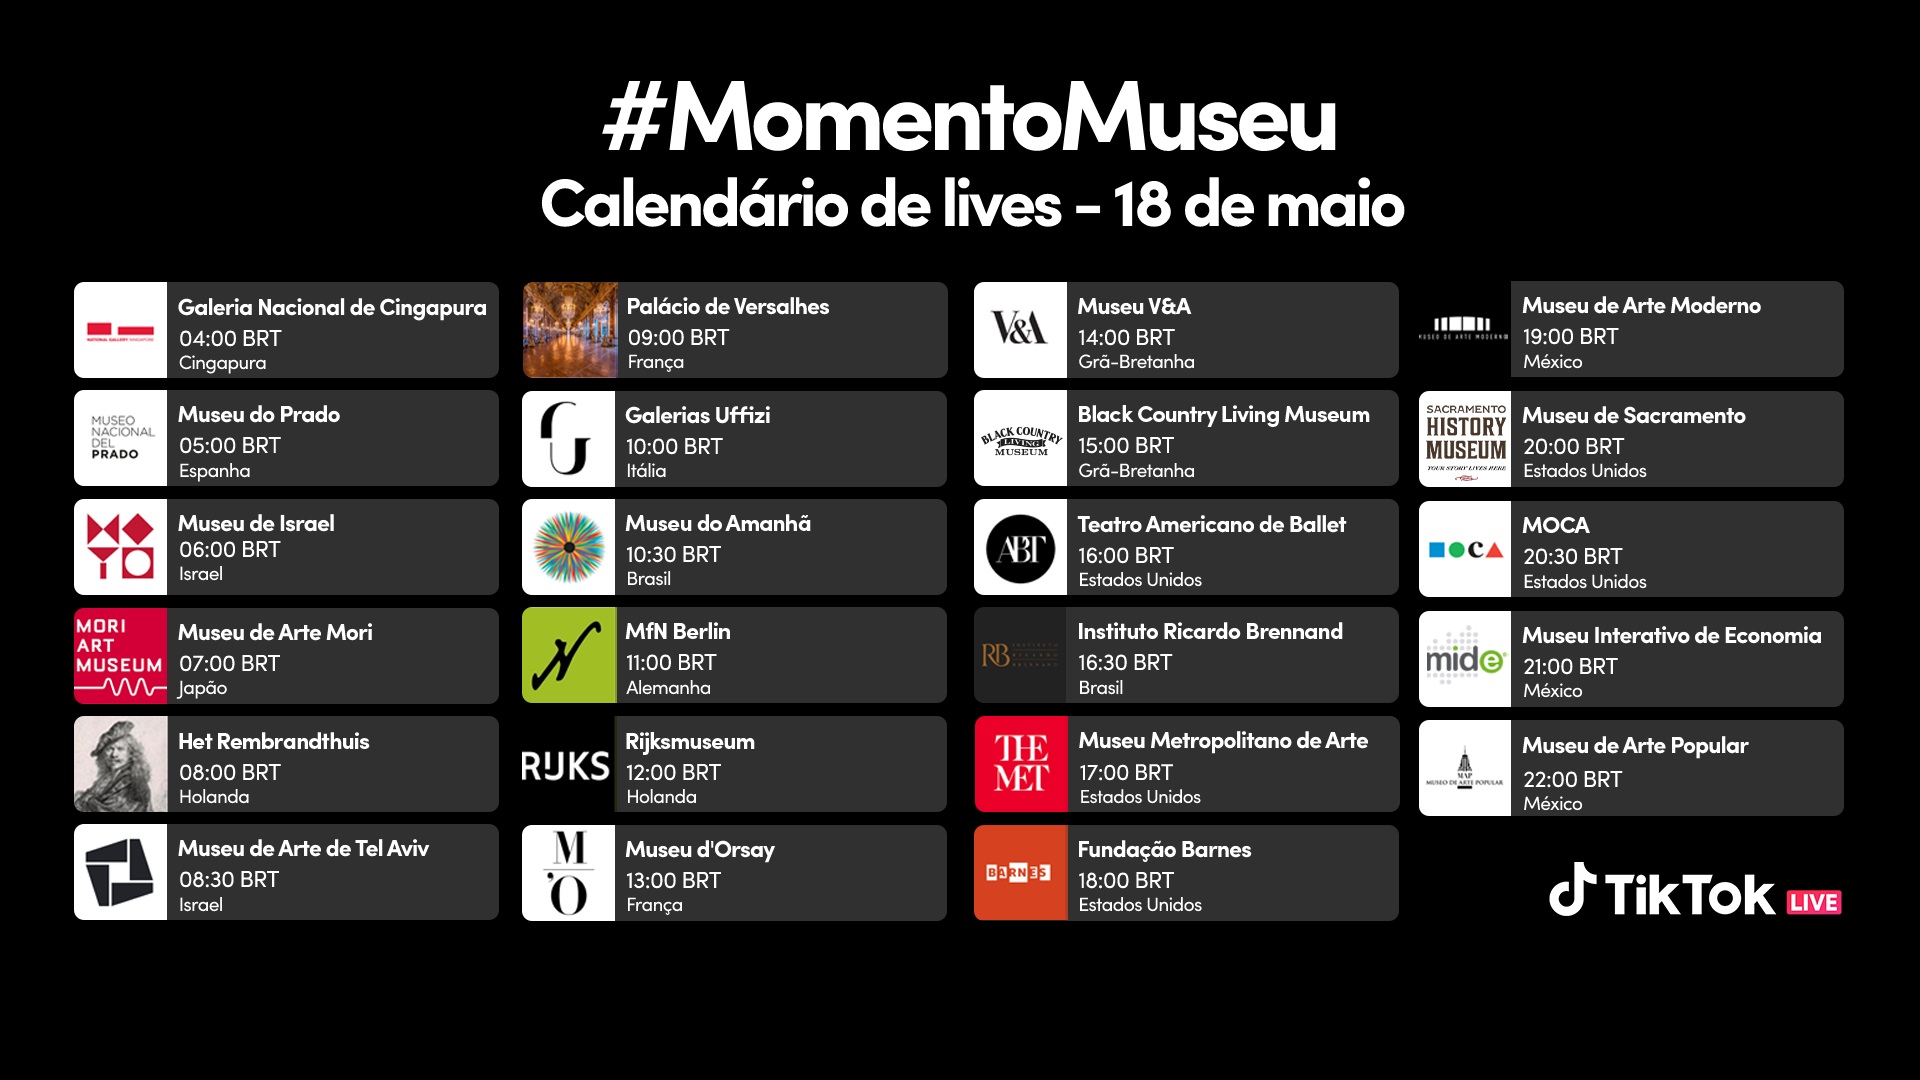 برمجة #MomentoMuseu: تيك توك. الكشف.